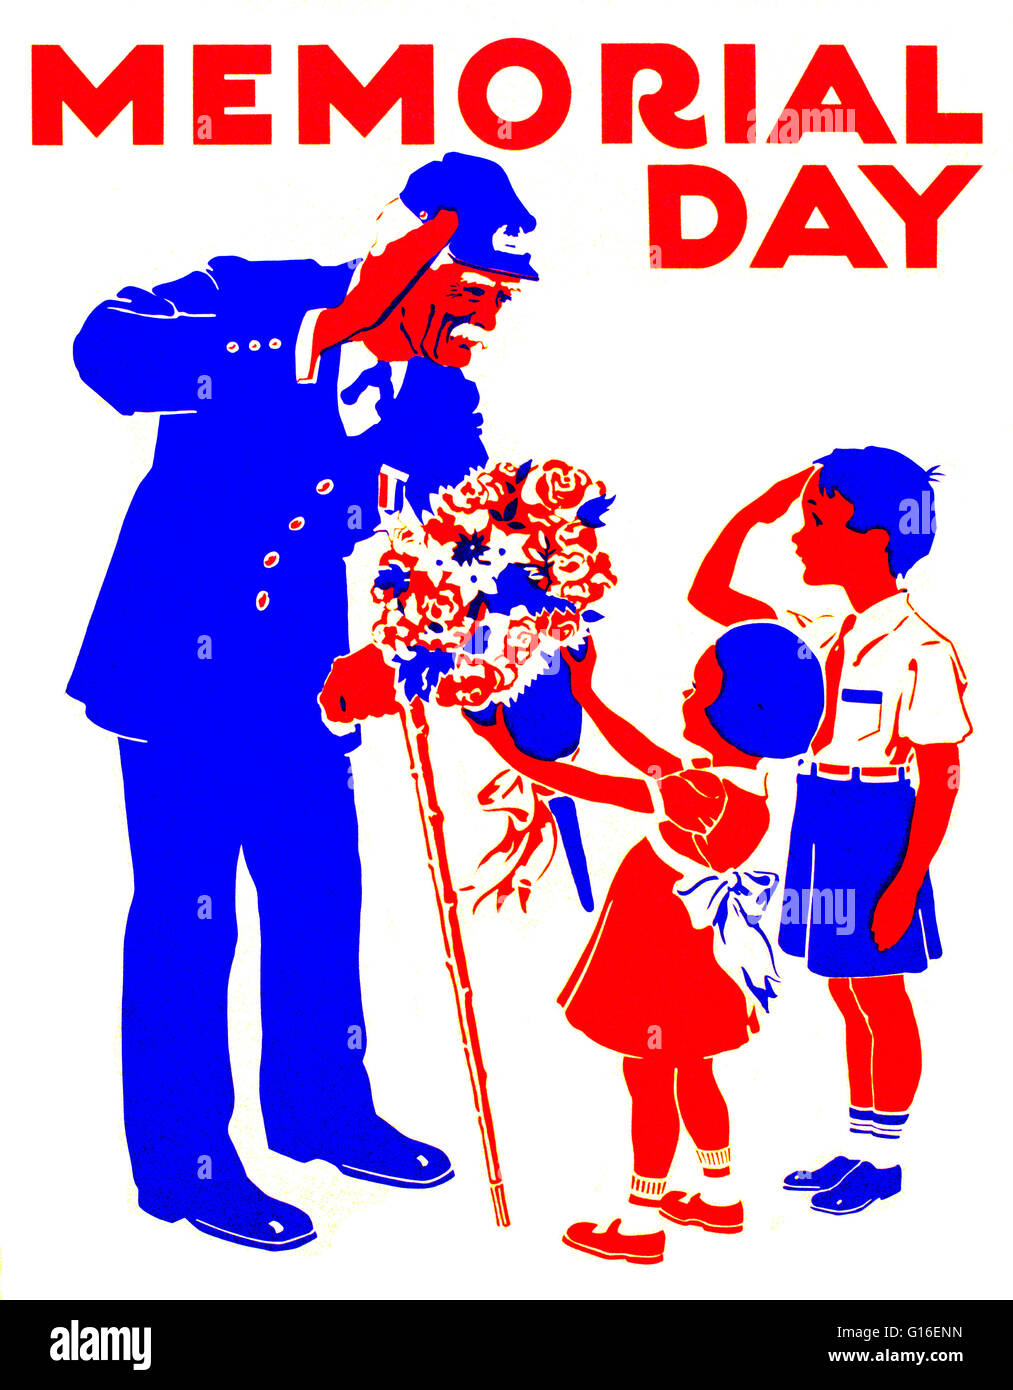 Titulado: 'Memorial Day'. Cartel en honor a los veteranos, mostrando un muchacho y un antiguo soldado saludando el uno al otro, y presentando la niña soldado con bouquet de flores. El Federal Art Project (FAP) fue el brazo de artes visuales de la época de la Gran Depresión New Deal W Foto de stock